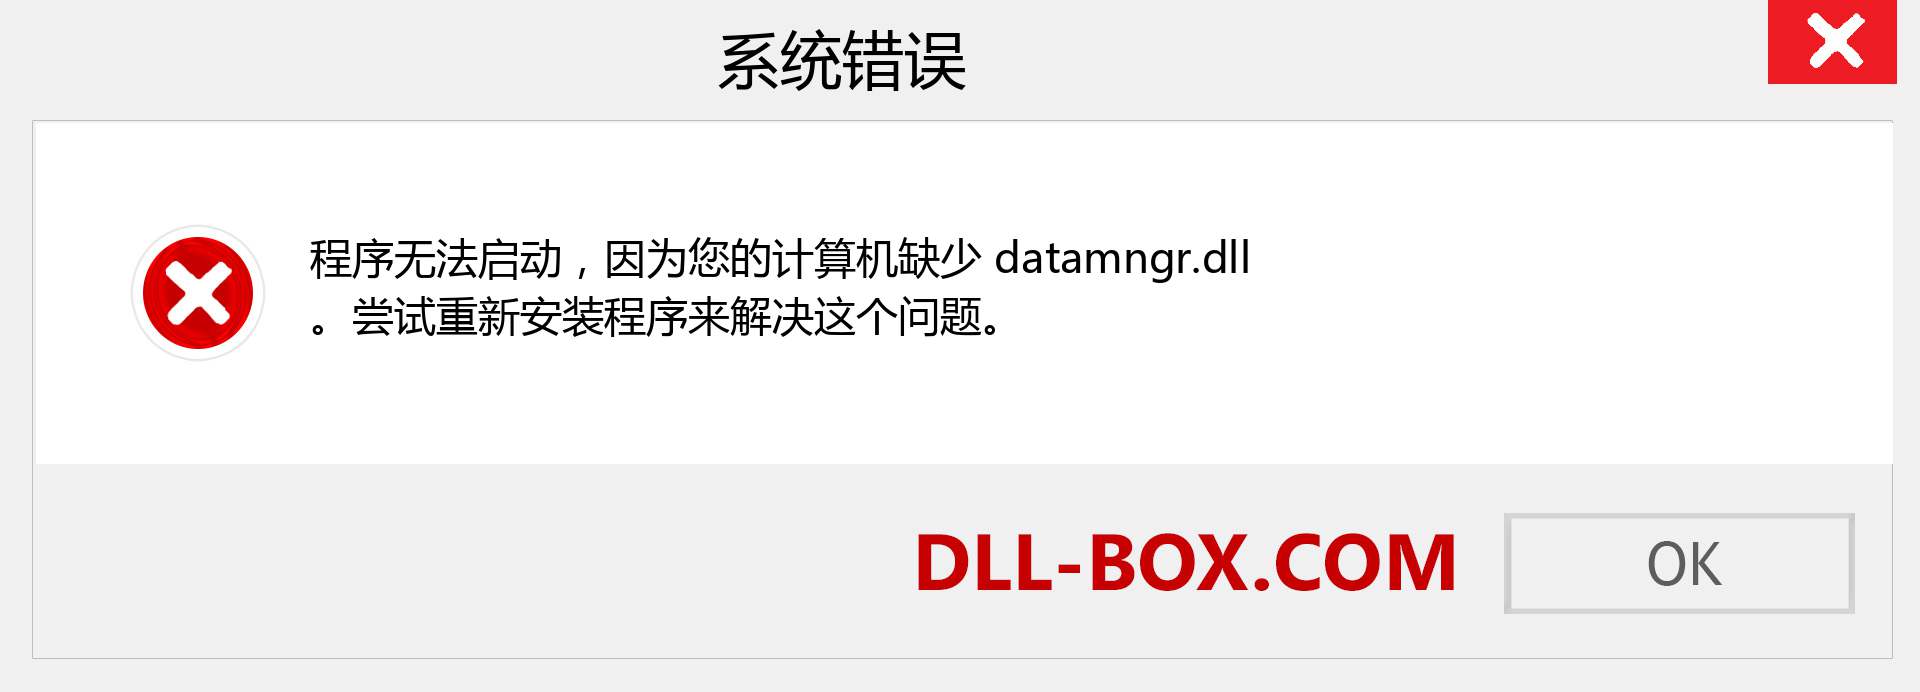 datamngr.dll 文件丢失？。 适用于 Windows 7、8、10 的下载 - 修复 Windows、照片、图像上的 datamngr dll 丢失错误